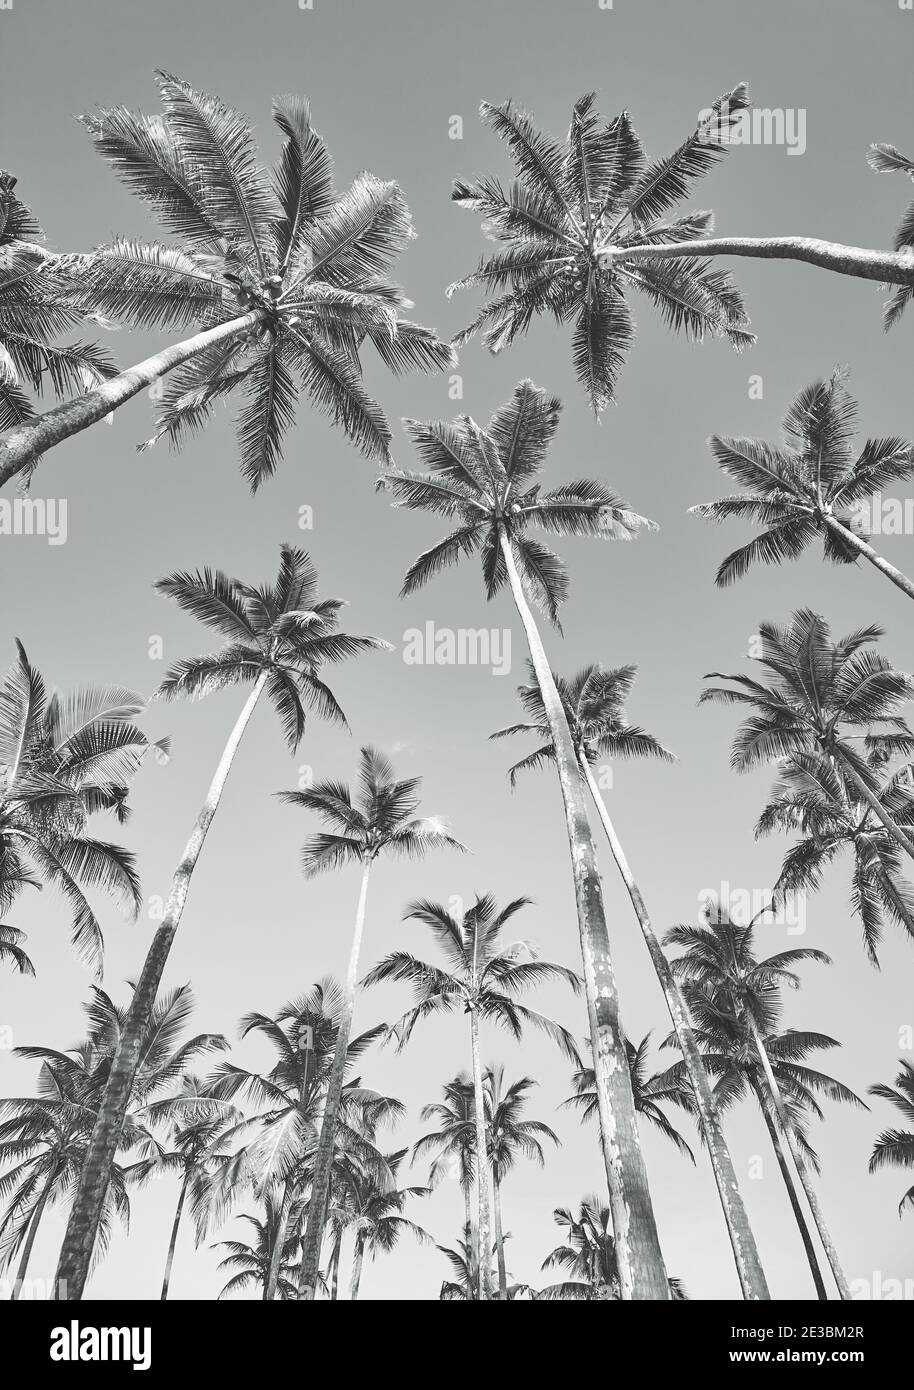 Blick auf Kokospalmen, schwarz-weiß Sommer Urlaub Bild. Stockfoto